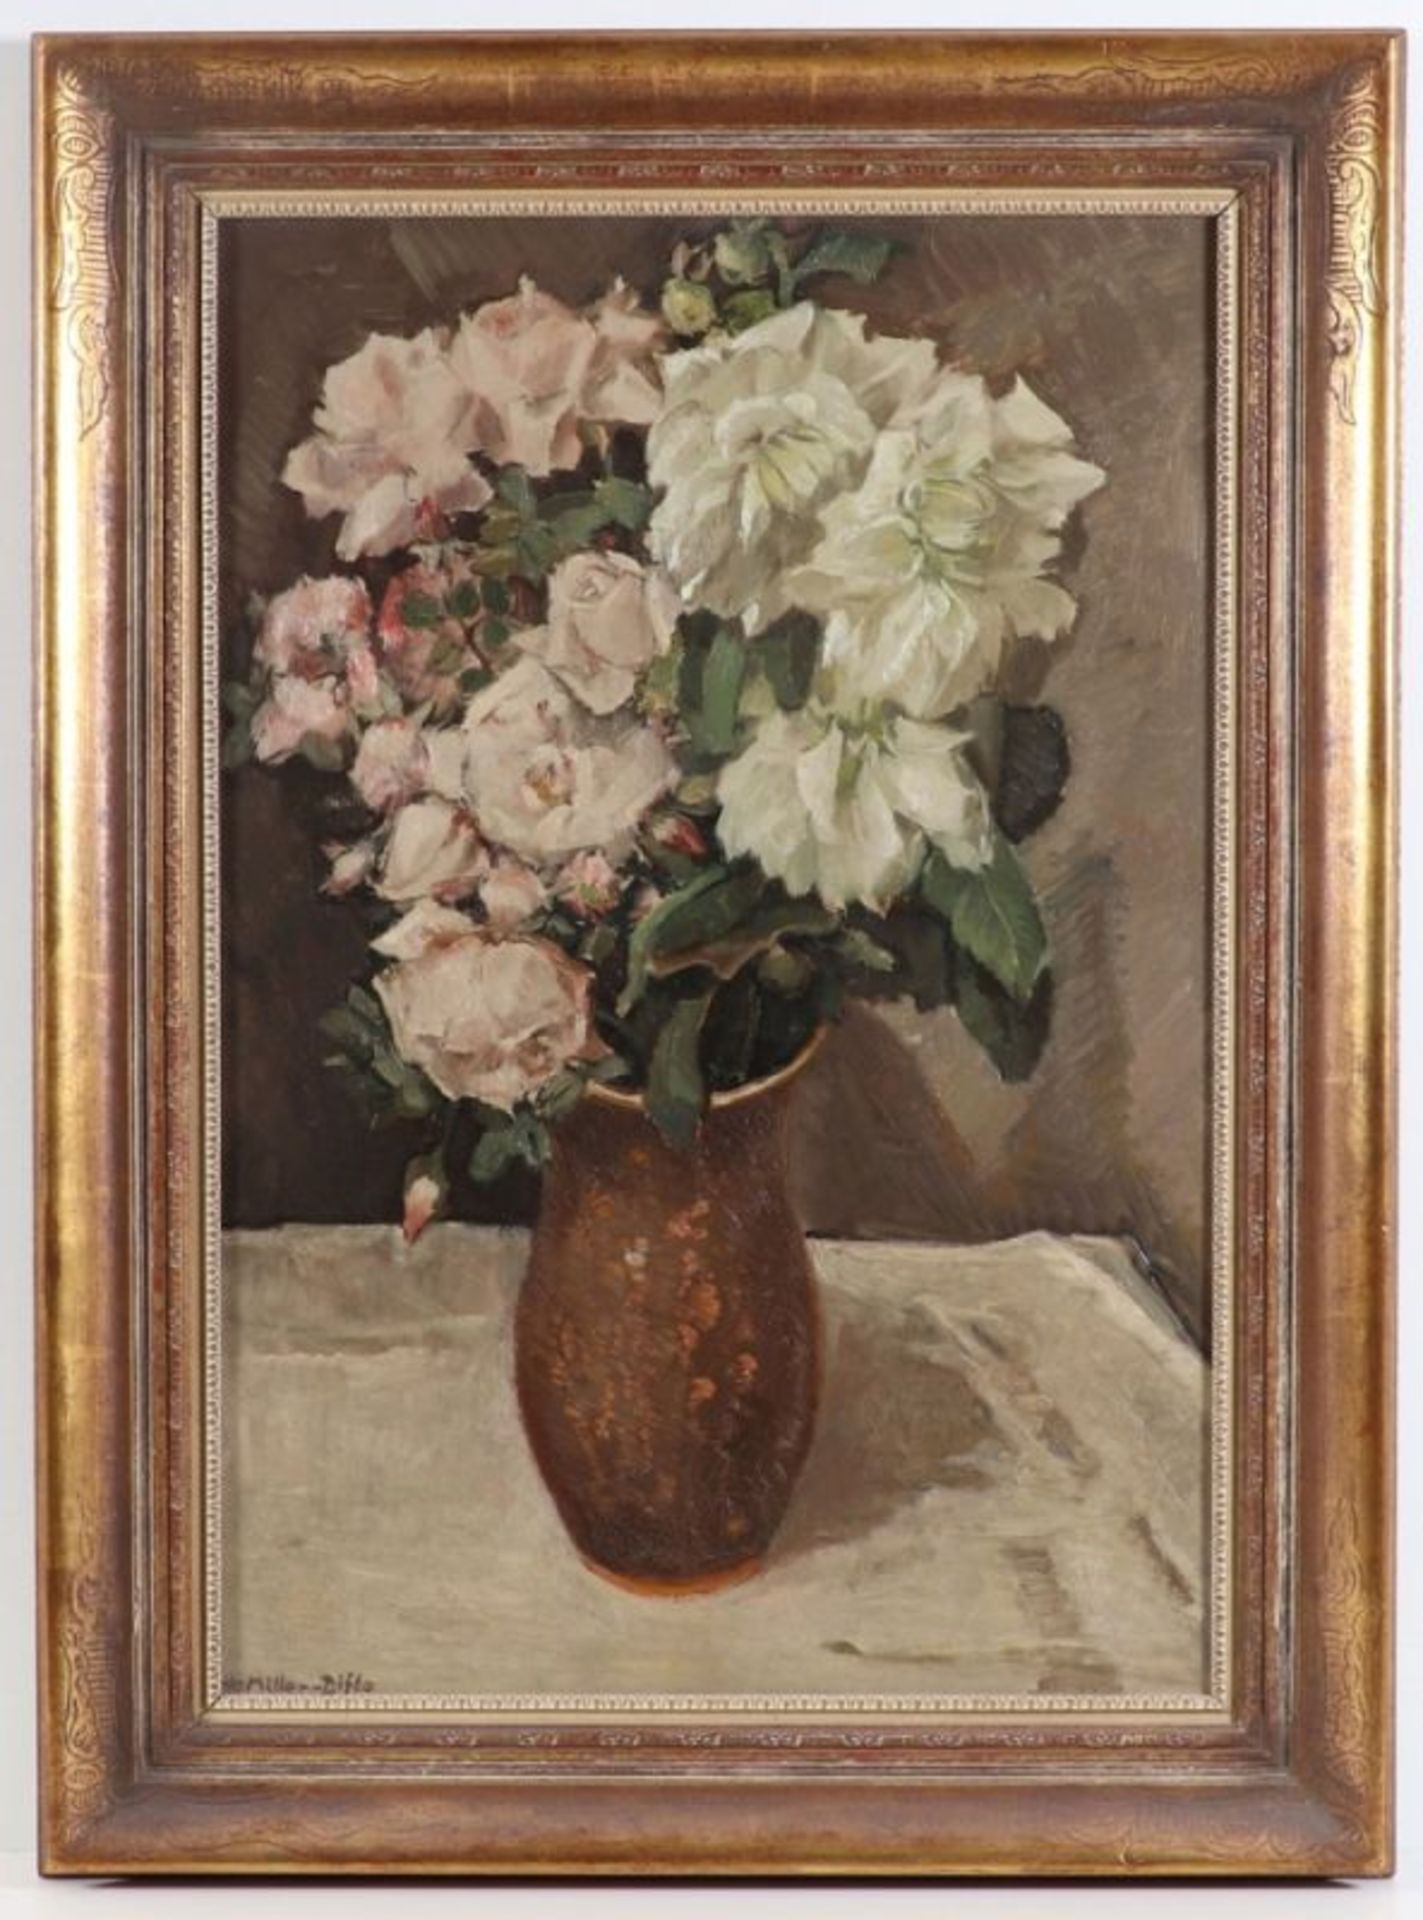 Otto Miller-Diflo1878 Hasberg - 1949 München - "Blumenstrauß (Rosen und Dahlien)" - Öl/Hartfaser. 61 - Bild 2 aus 2